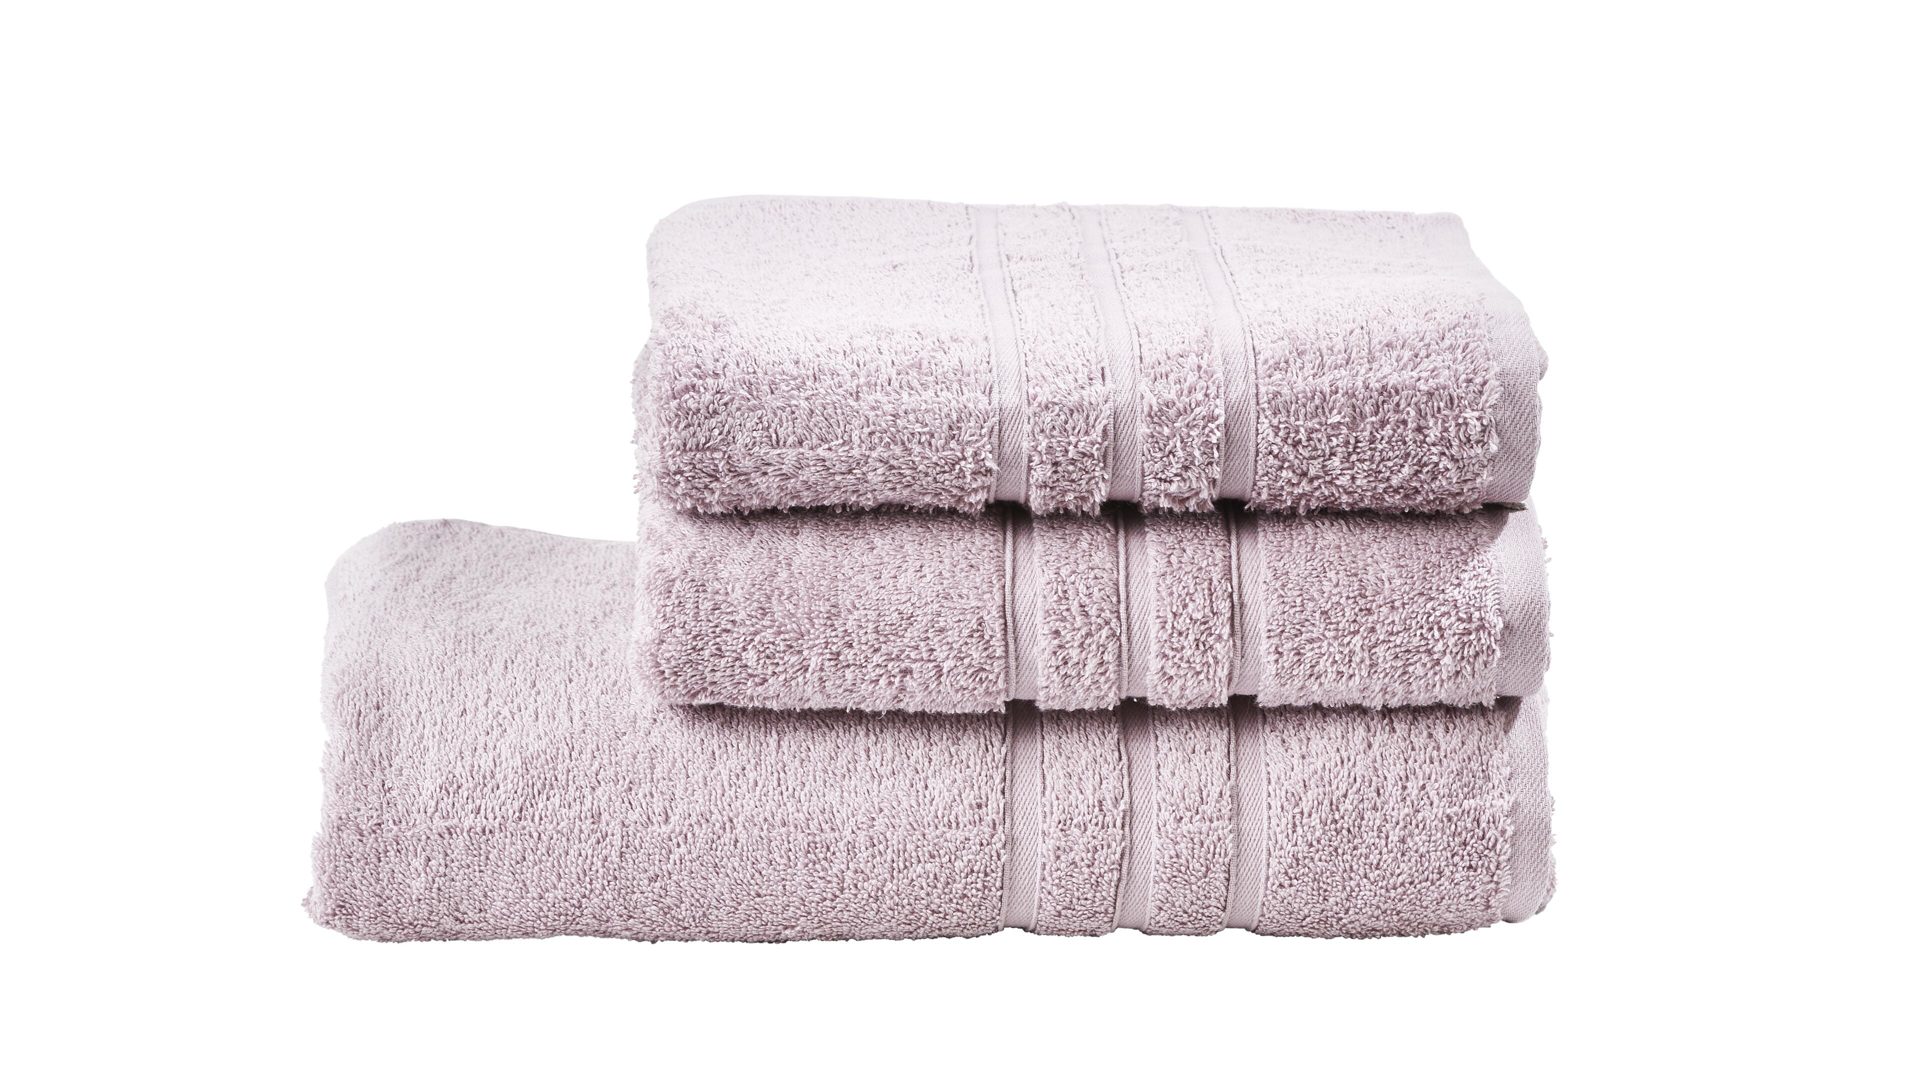 Handtuch-Set Done.® aus Stoff in Pink done.® Handtuch-Set Daily Uni altrosa Baumwolle – dreiteilig